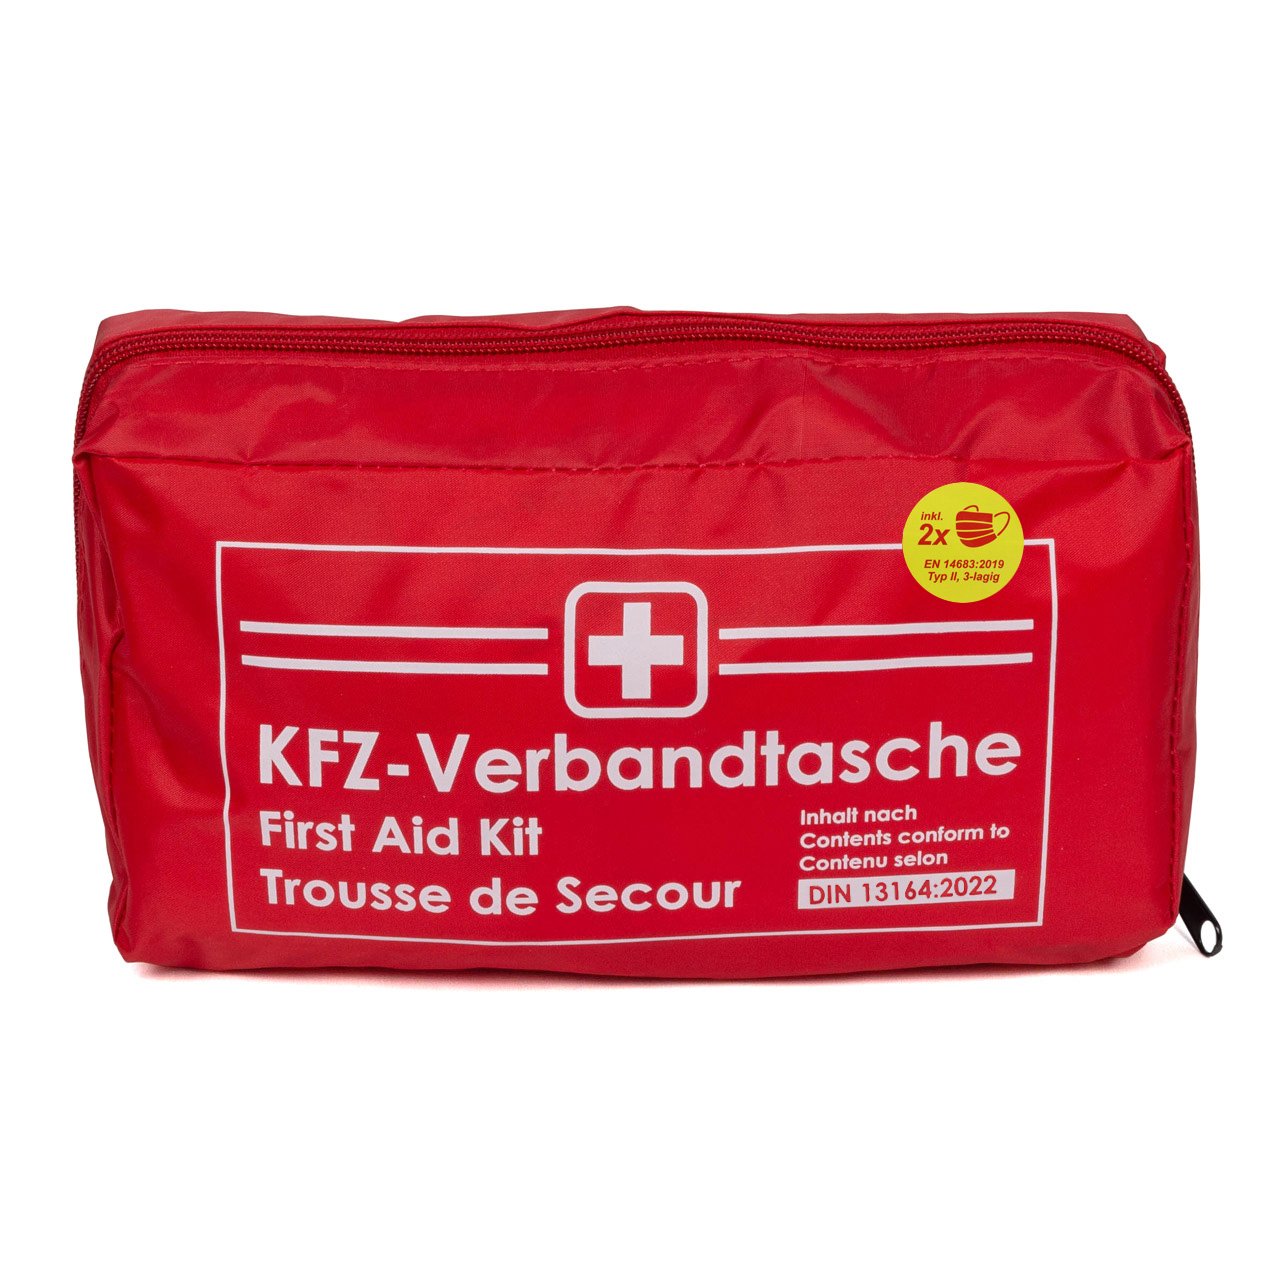 AUTO PKW KFZ Verbandtasche Verbandkasten Erste-Hilfe ROT DIN13164-2022 (MHD 10.2027)